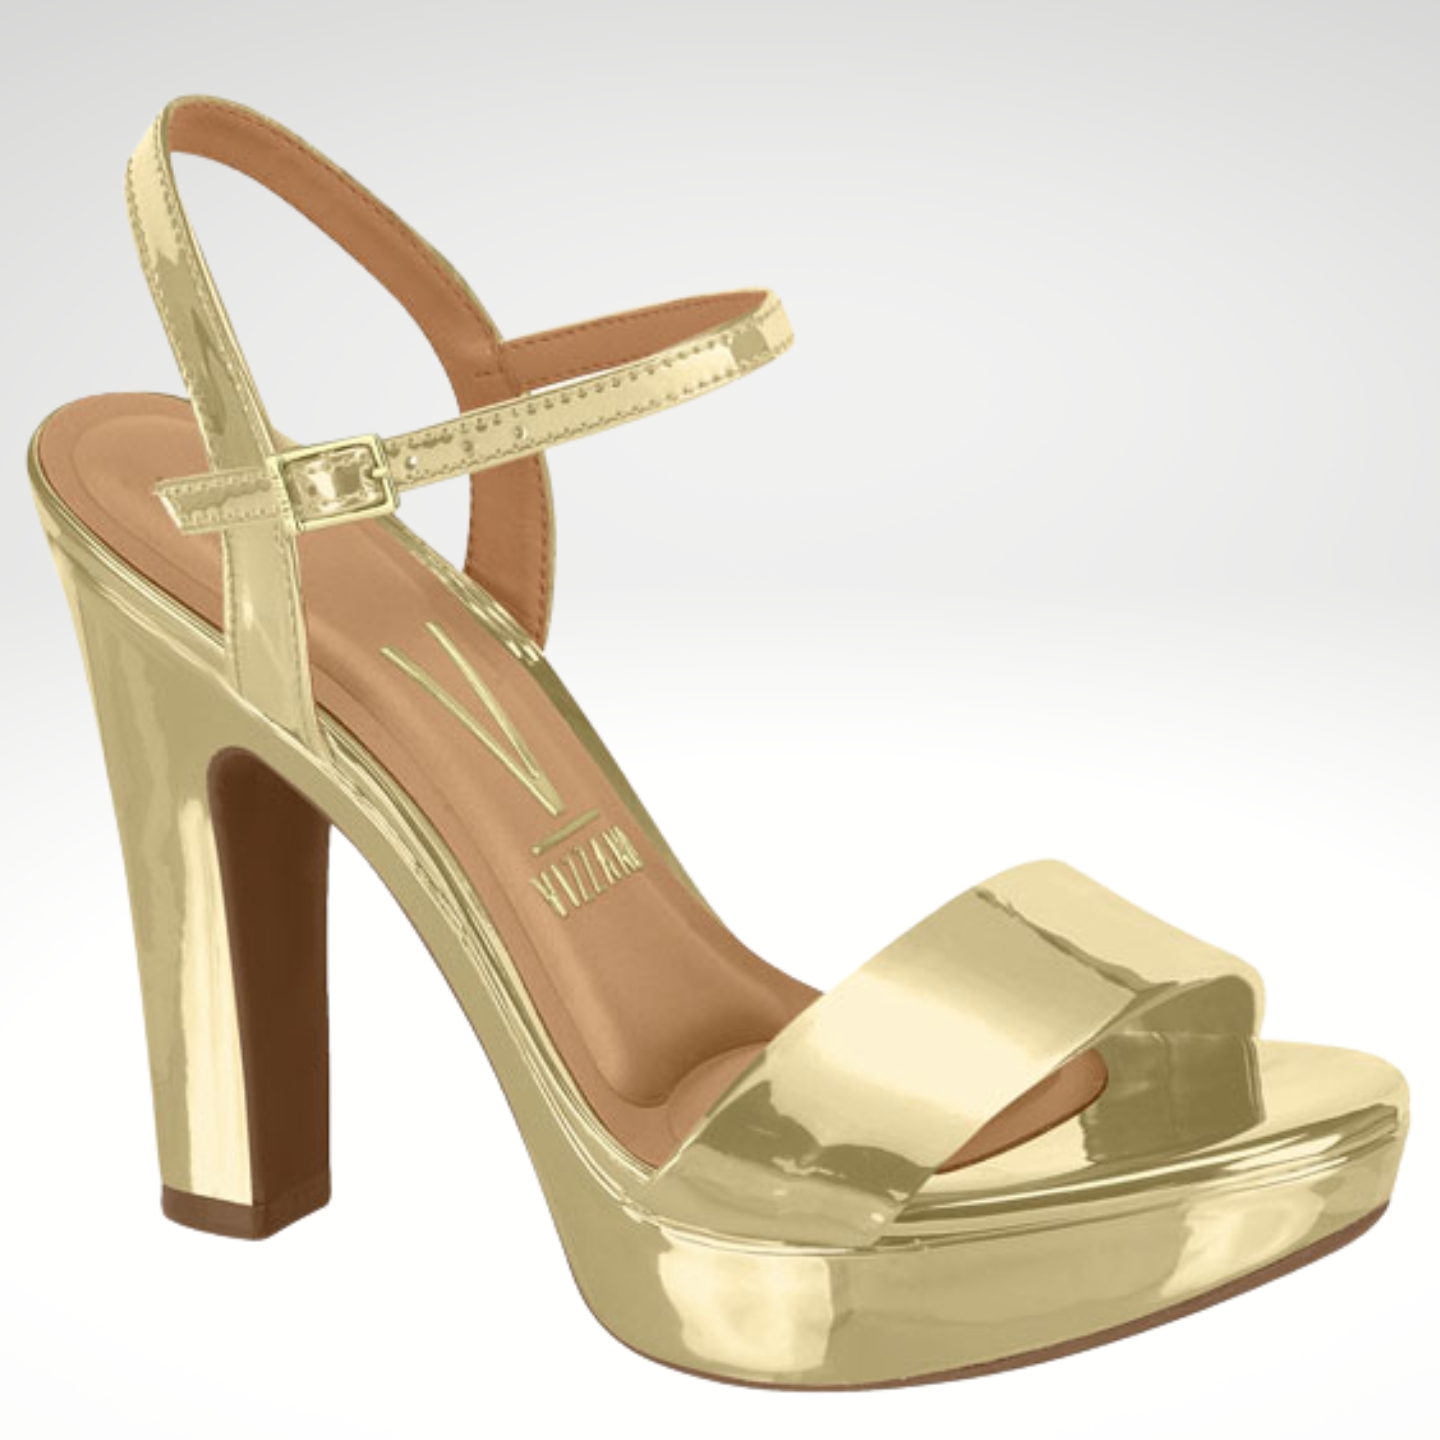 2725-95-002 – Gouden sandalen met brede hak en bandje over de voet – Gouden metallic hoge hakken